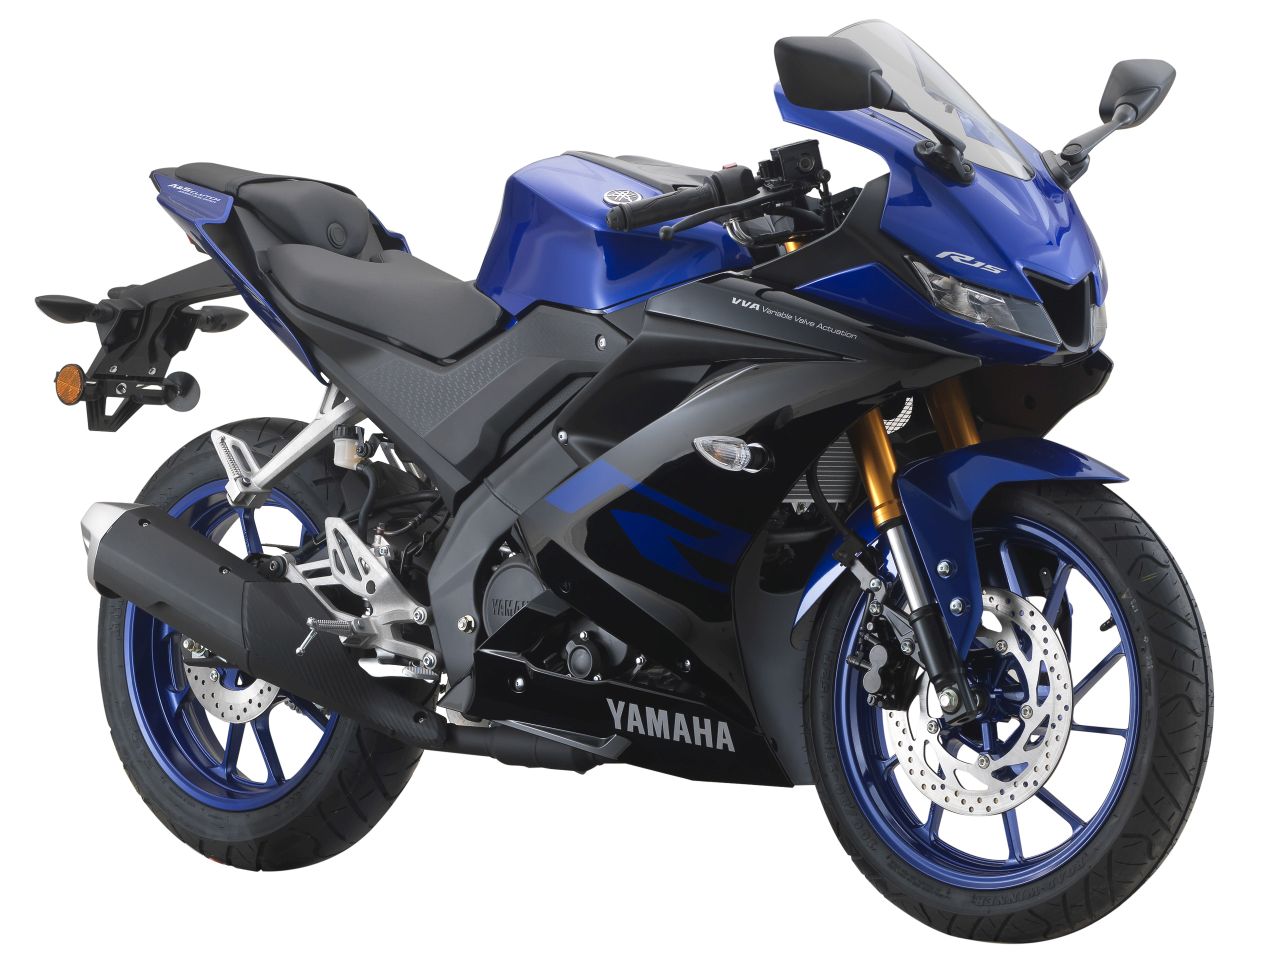 Yamaha R15 Malaysia 2018 Price - Yamaha's highly price model is the ...